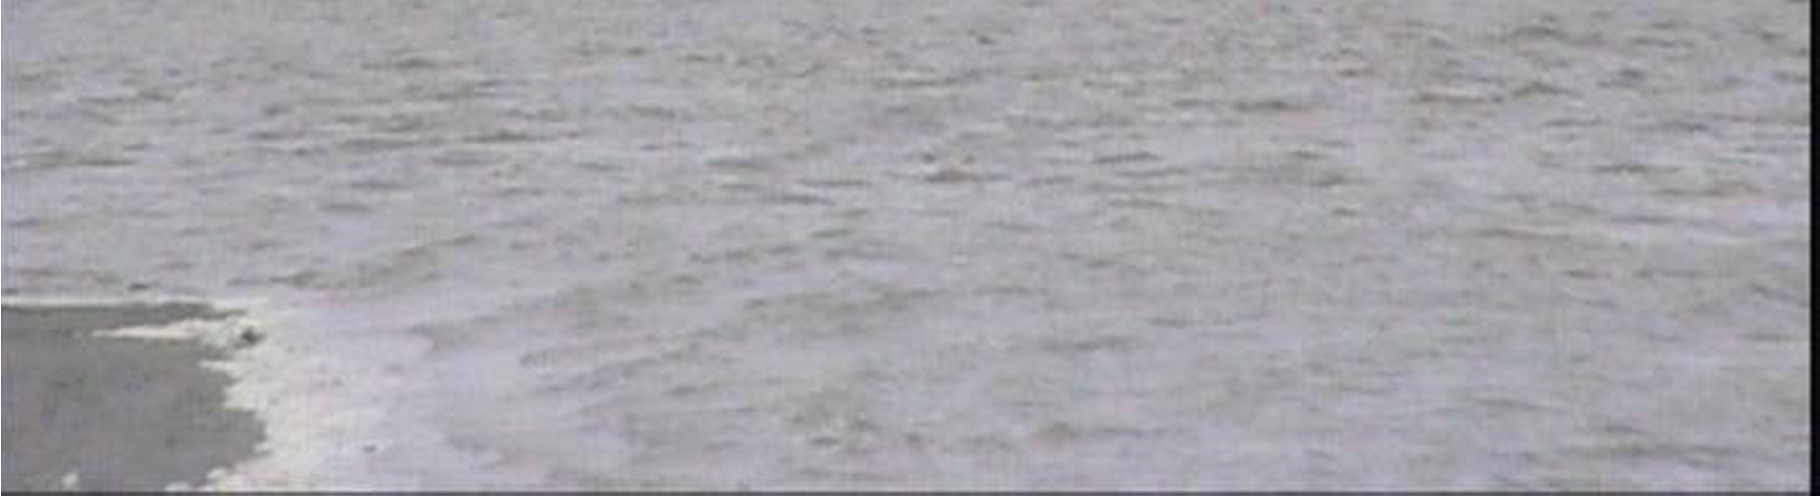 Figuur 5.11. Verstoring van zeehonden als gevolg van een jacht dat op 27 september 2013 om 10:55 h tussen de zandplaten van de Hond en Paap doorvoer.